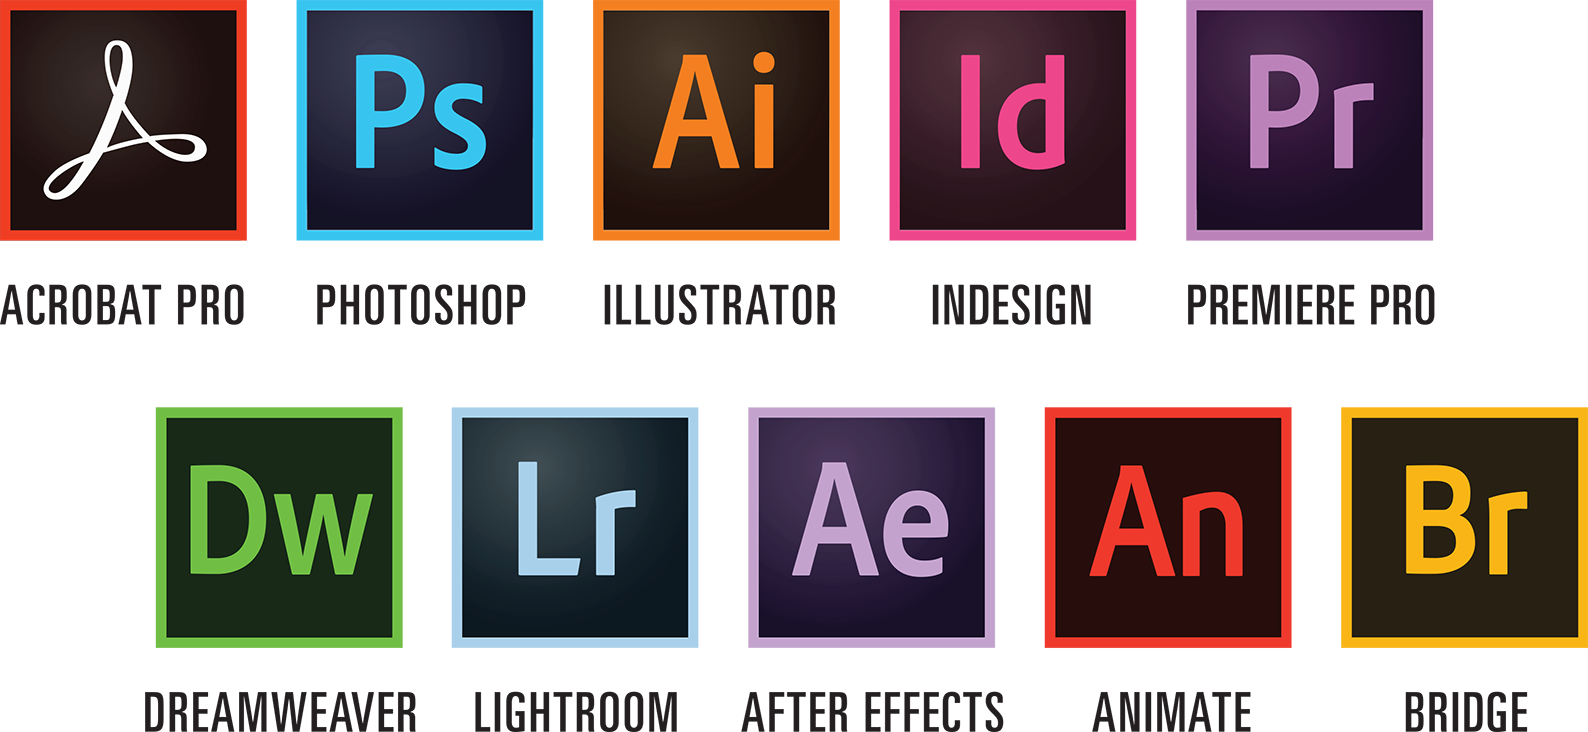 Avis Adobe Creative Cloud : Un accès aux applications de vidéo, design, photo et web - Appvizer